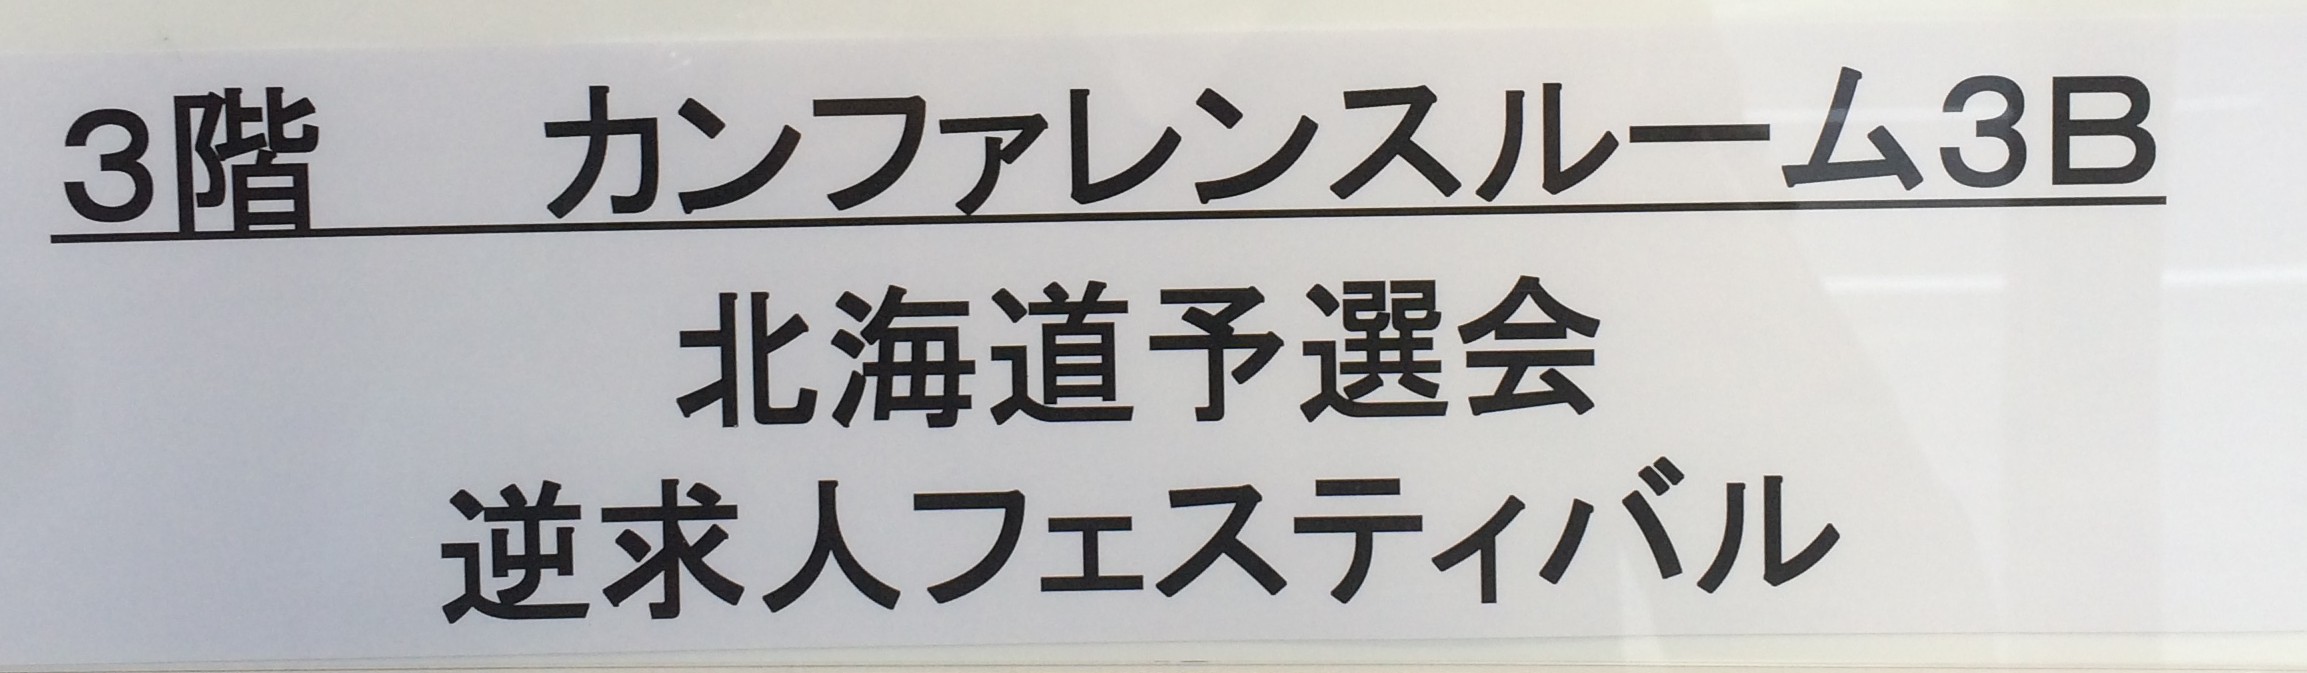 新卒採用イベントレポート-11/23逆求人北海道予選会の写真